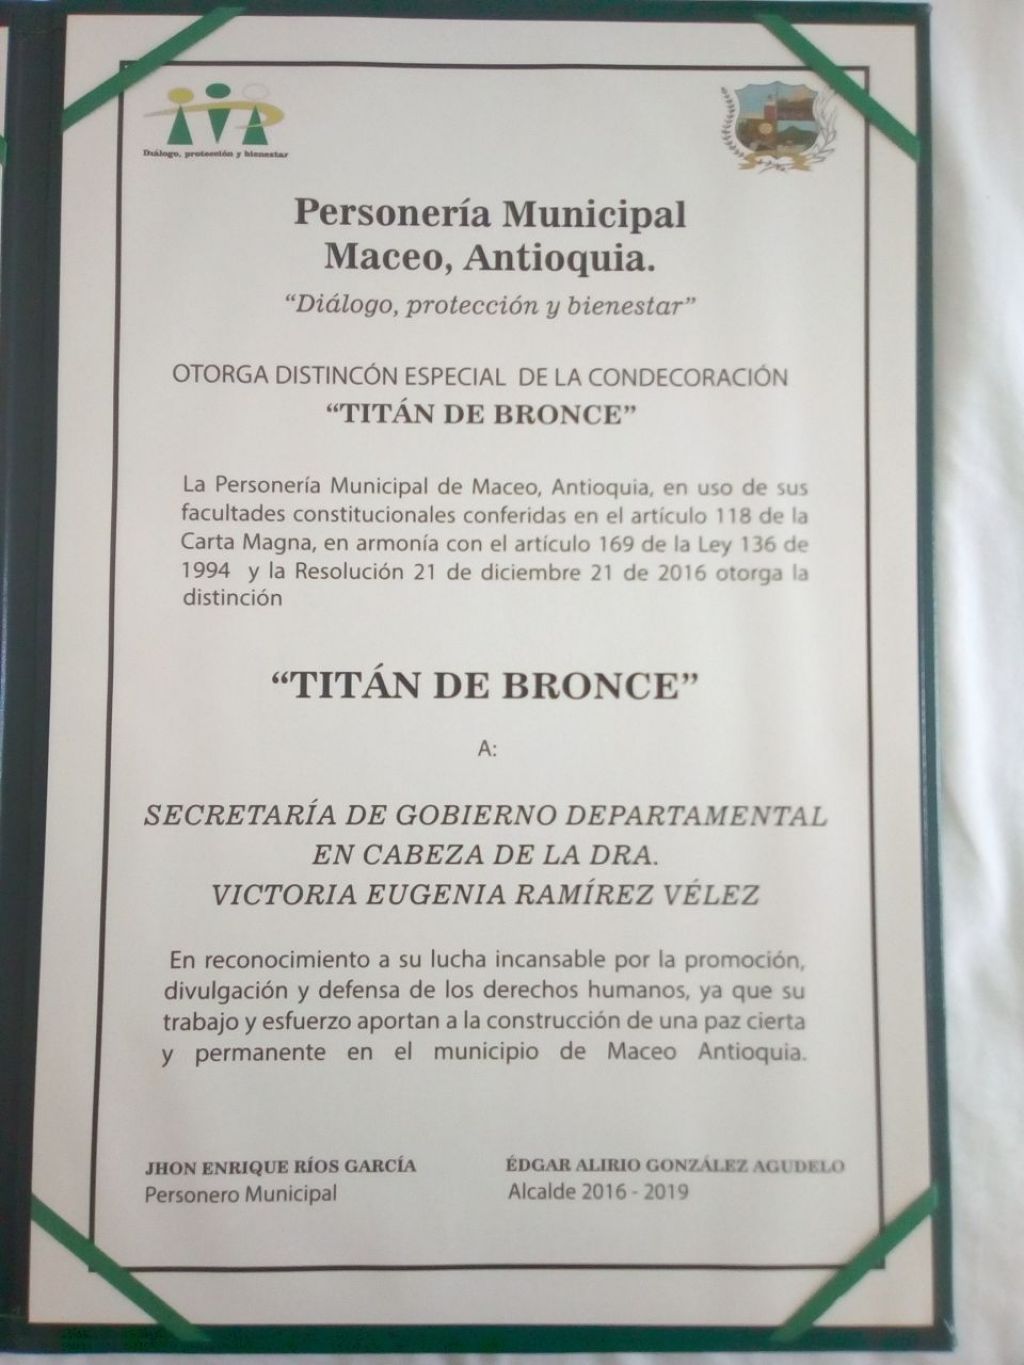 Secretaría de Gobierno departamental recibe condecoración “Titán de bronce” en Maceo